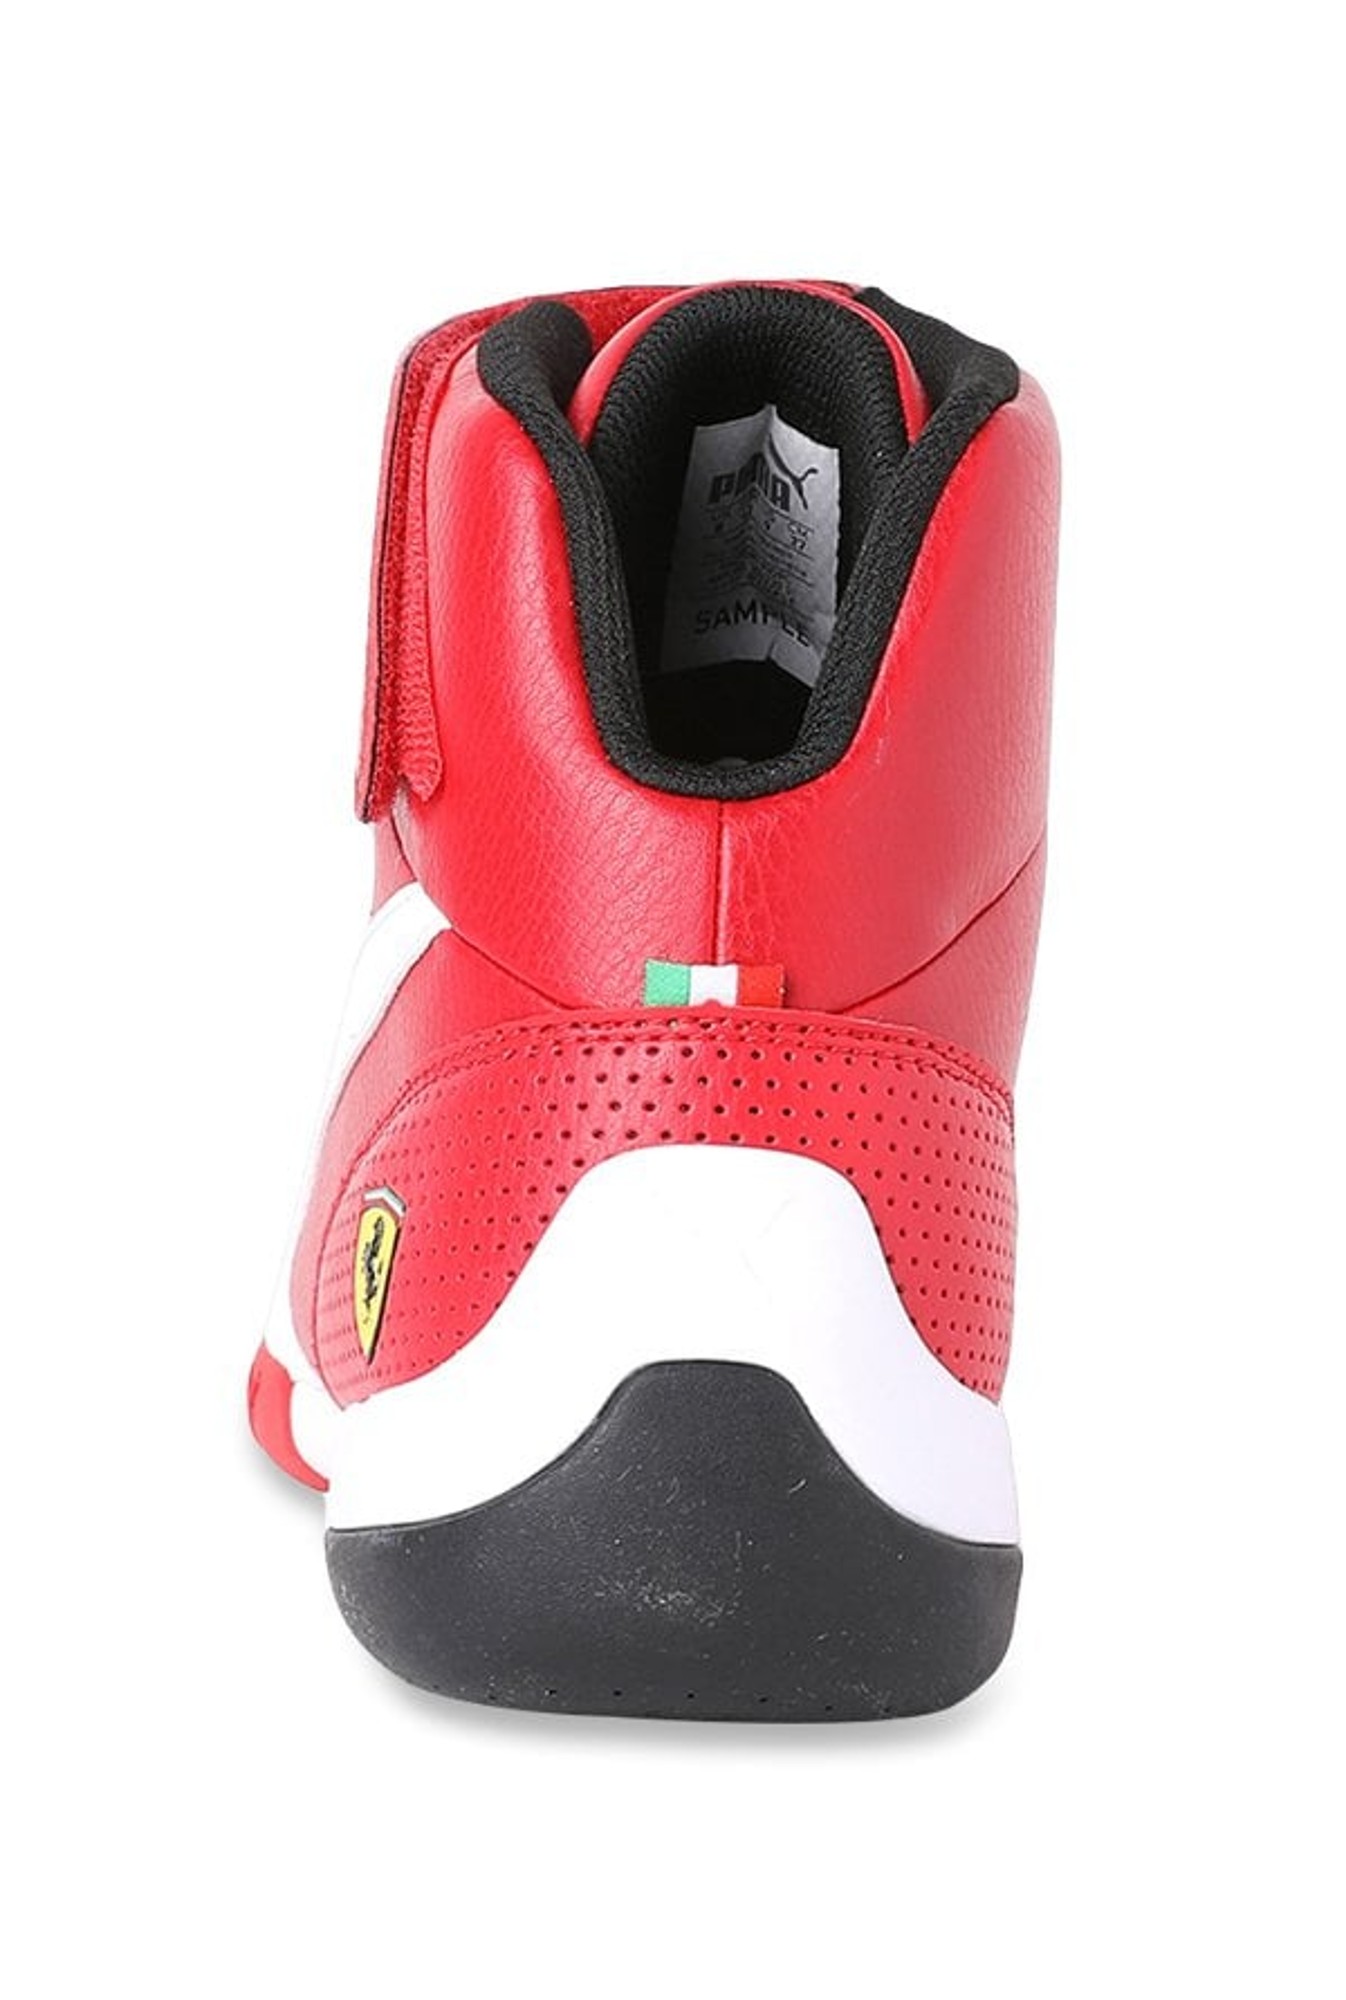 Puma Ferrari Shoes Ankle Online Sale 